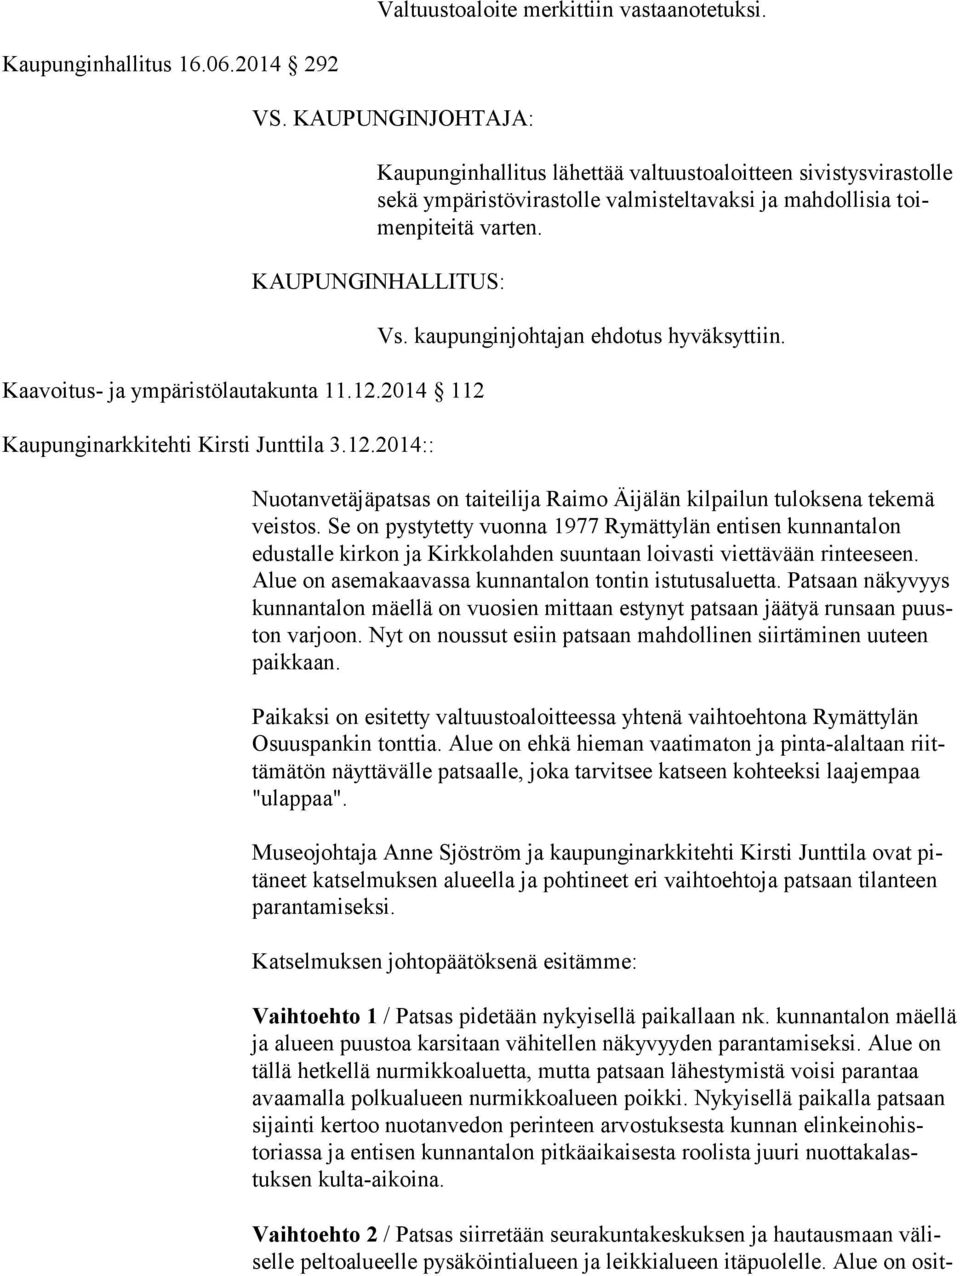 KAUPUNGINHALLITUS: Kaavoitus- ja ympäristölautakunta 11.12.2014 112 Kaupunginarkkitehti Kirsti Junttila 3.12.2014:: Vs. kaupunginjohtajan ehdotus hyväksyttiin.